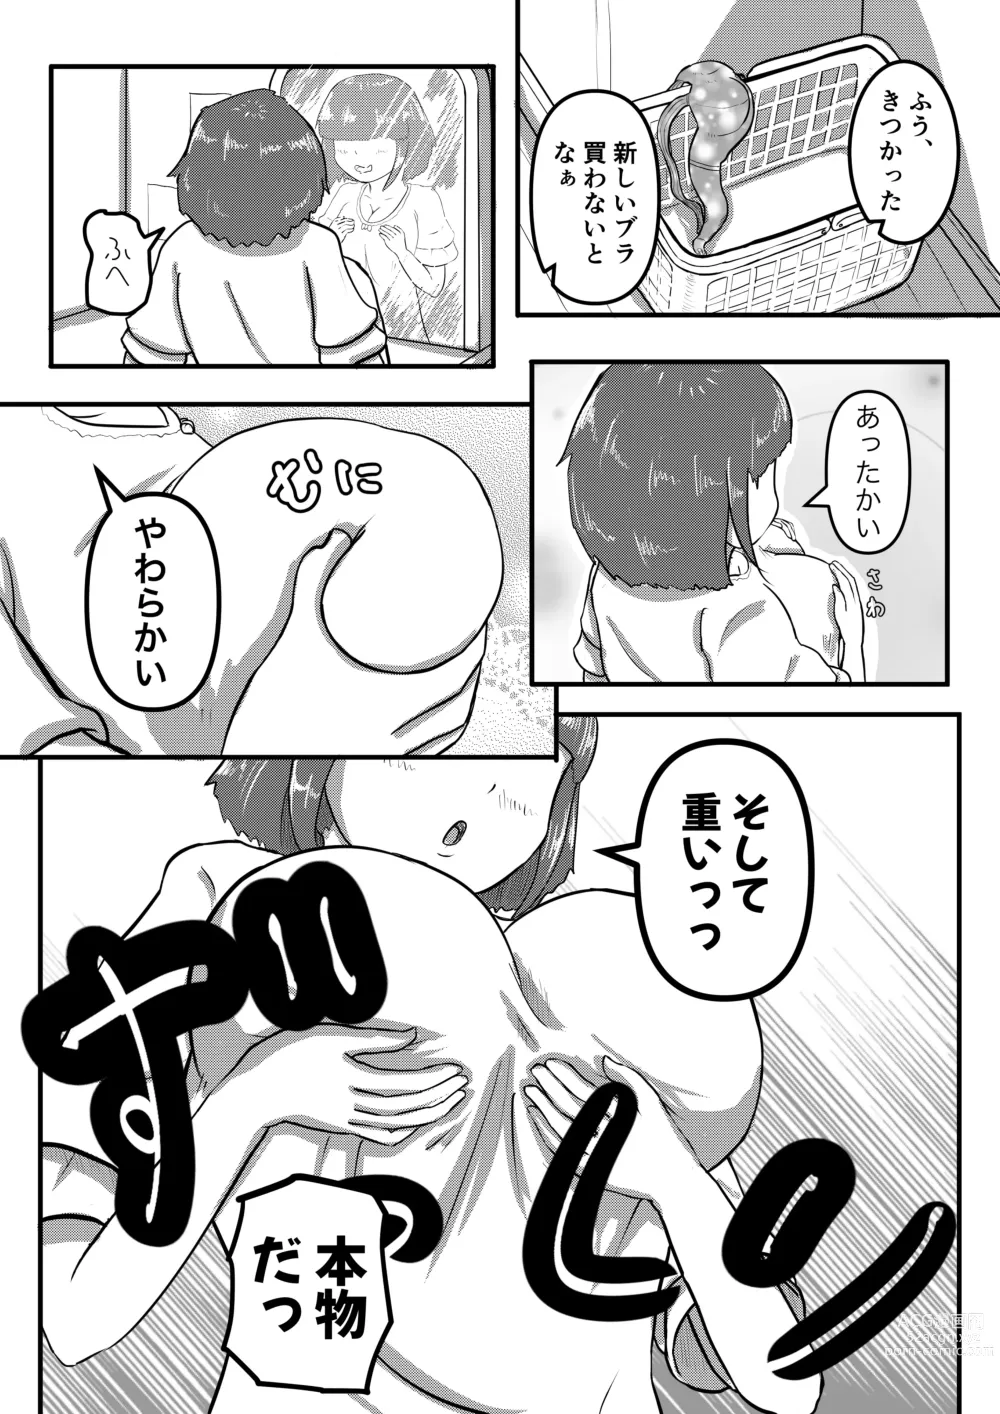 Page 4 of doujinshi Negai Fukuramu Maji Nai Ningyou